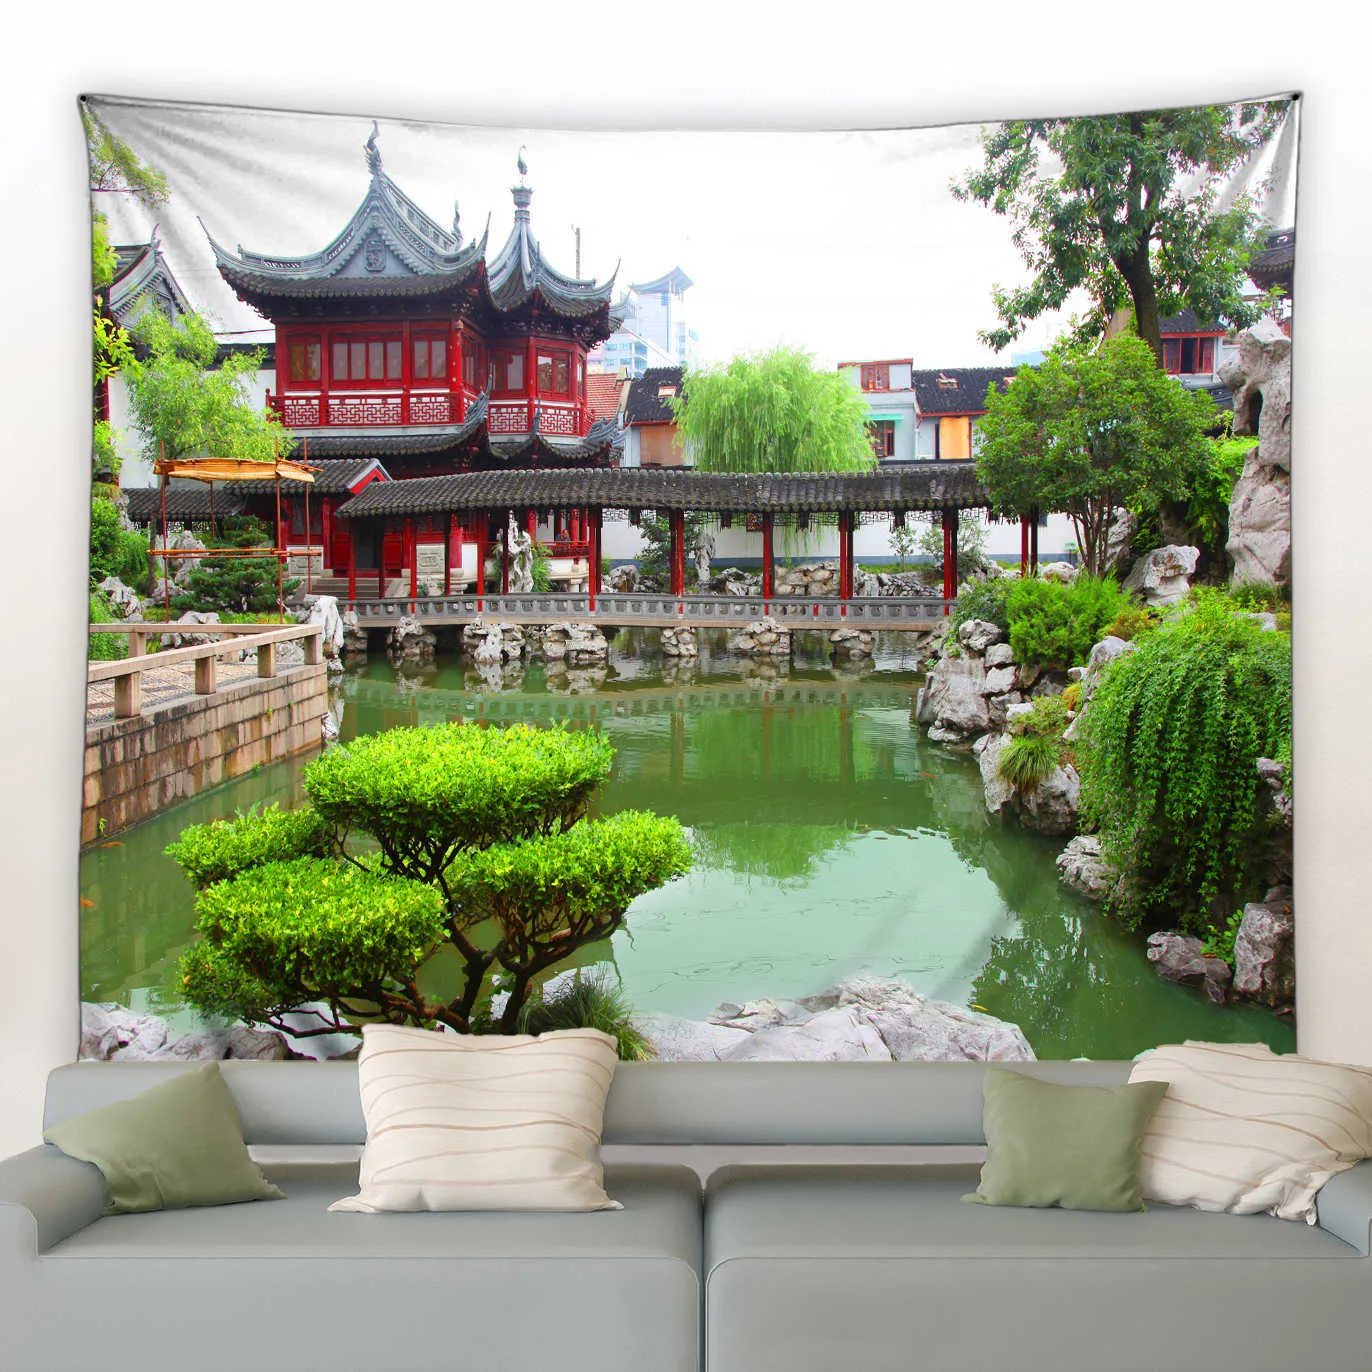 Wandteppiche Park Naturlandschaft Wandteppich Flusspavillon Grüne Pflanzen Blumen Landschaftsdekoration im chinesischen Stil Wandteppich für Zuhause